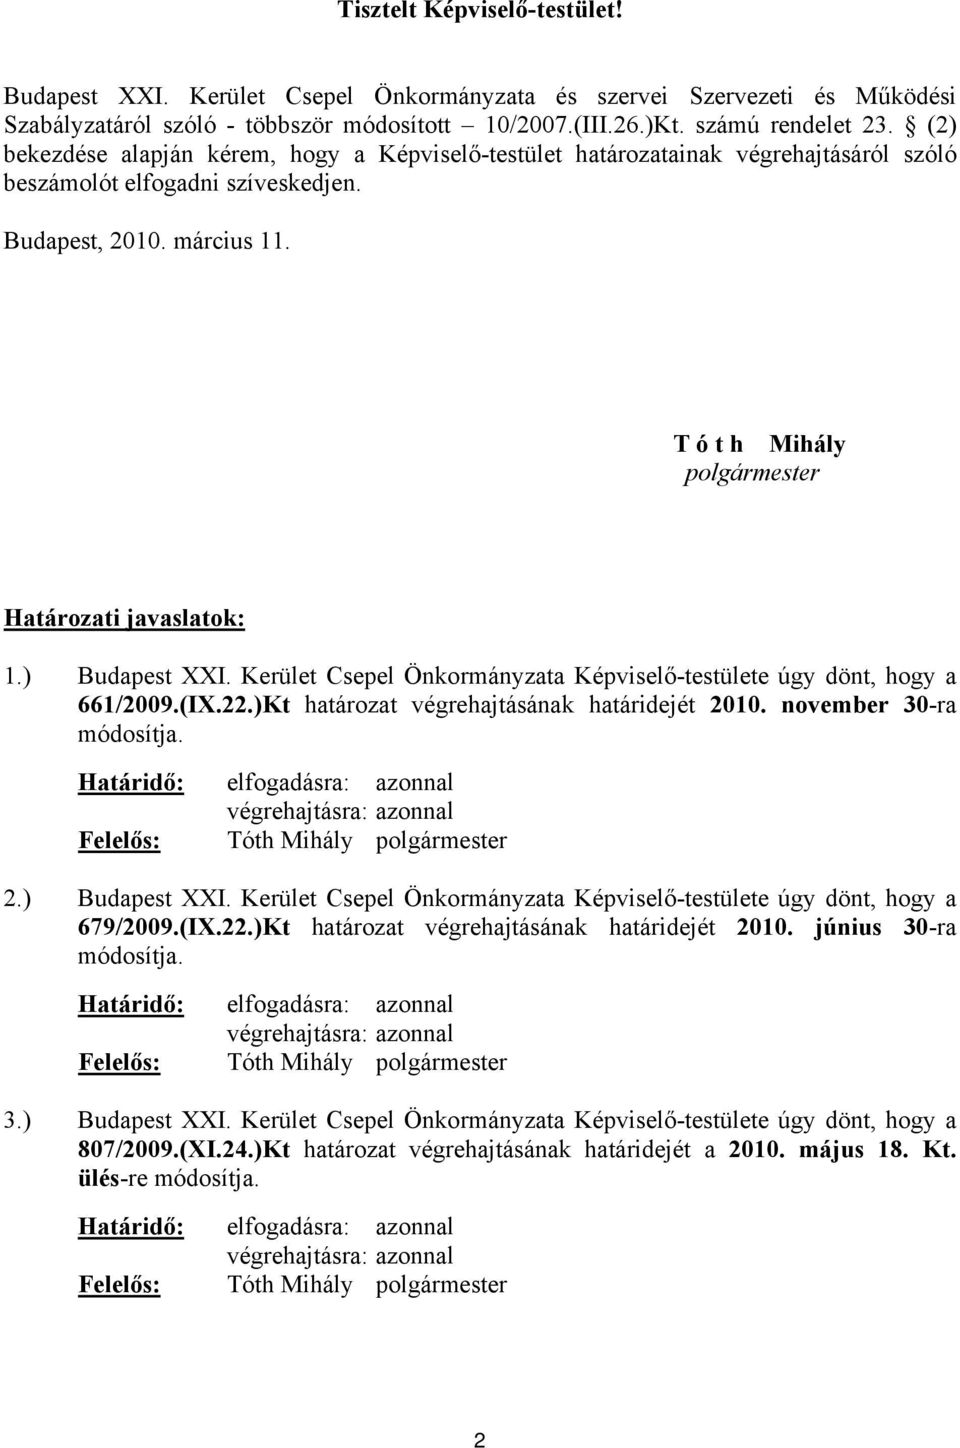 T ó t h Mihály polgármester Határozati javaslatok: 1.) Budapest XXI. Kerület Csepel Önkormányzata Képviselő-testülete úgy dönt, hogy a 661/2009.(IX.22.)Kt határozat végrehajtásának határidejét 2010.